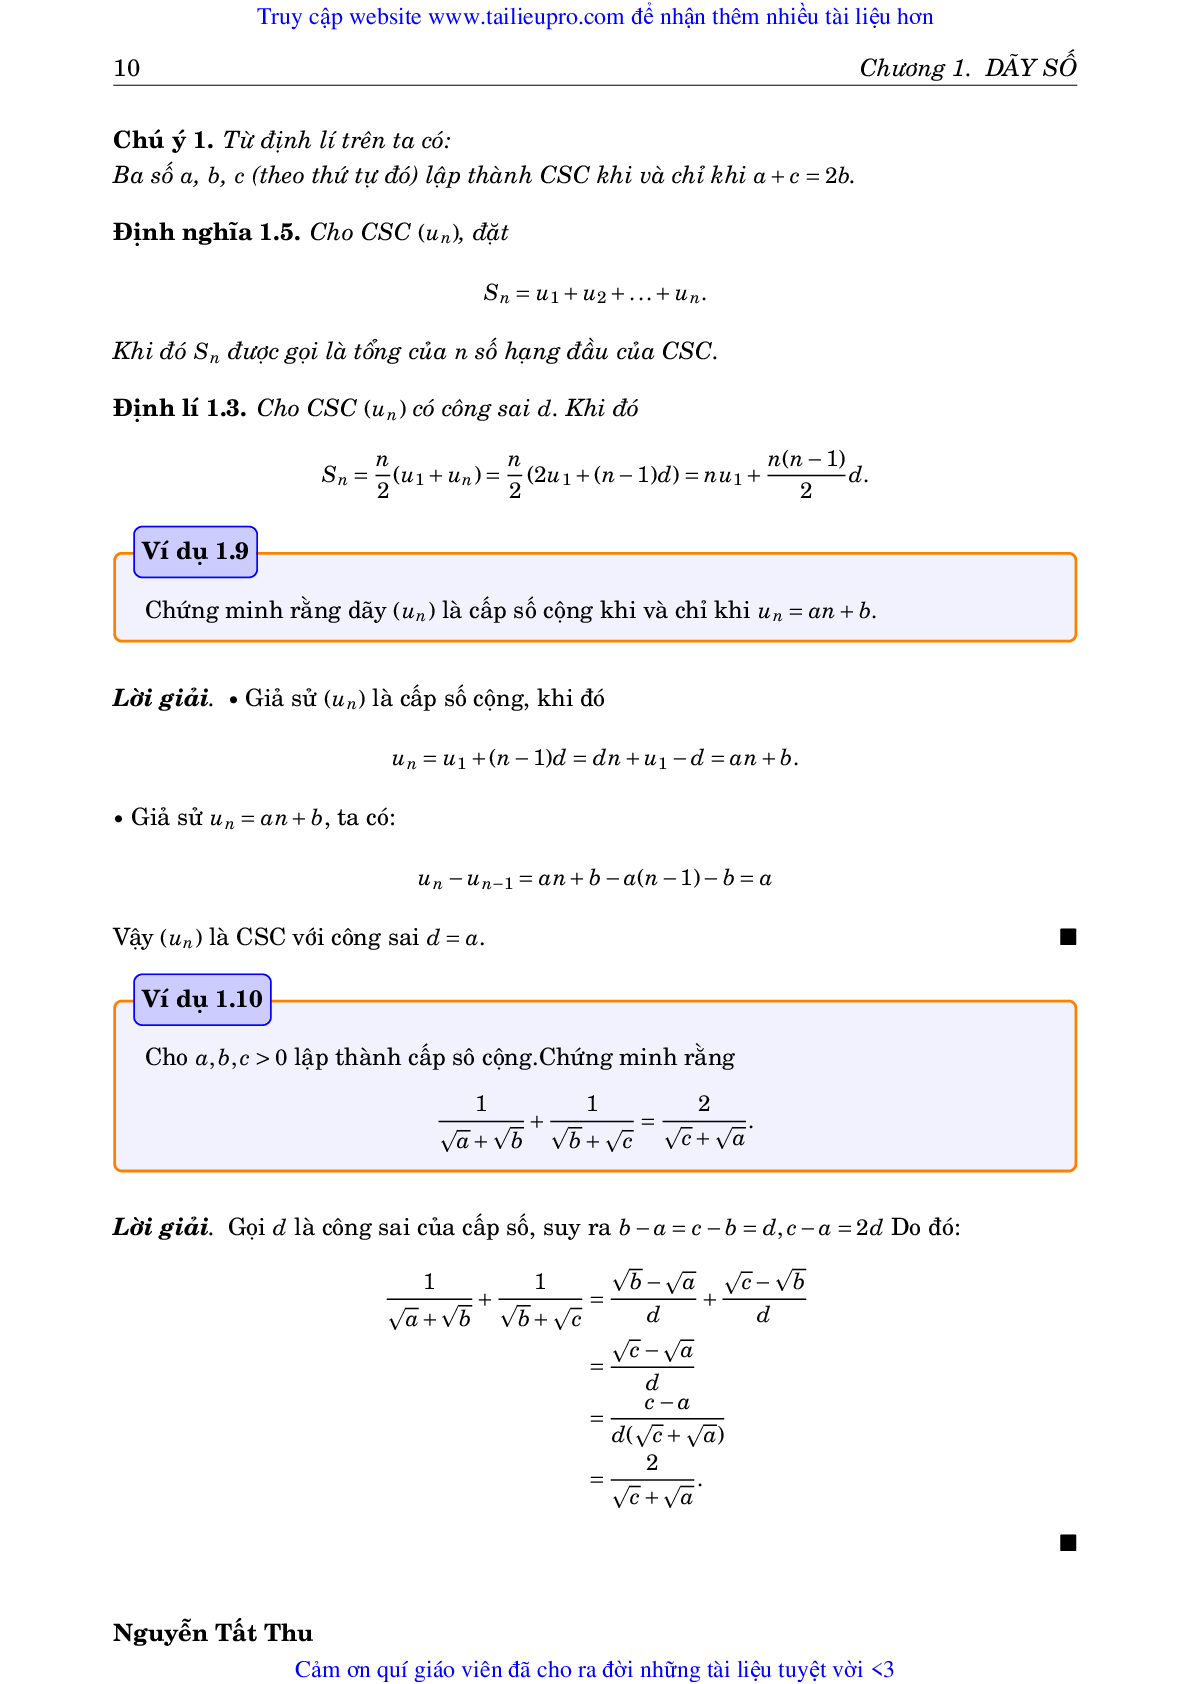 Chuyên đề Dãy số và giới hạn của dãy số môn Toán lớp 11 (trang 10)